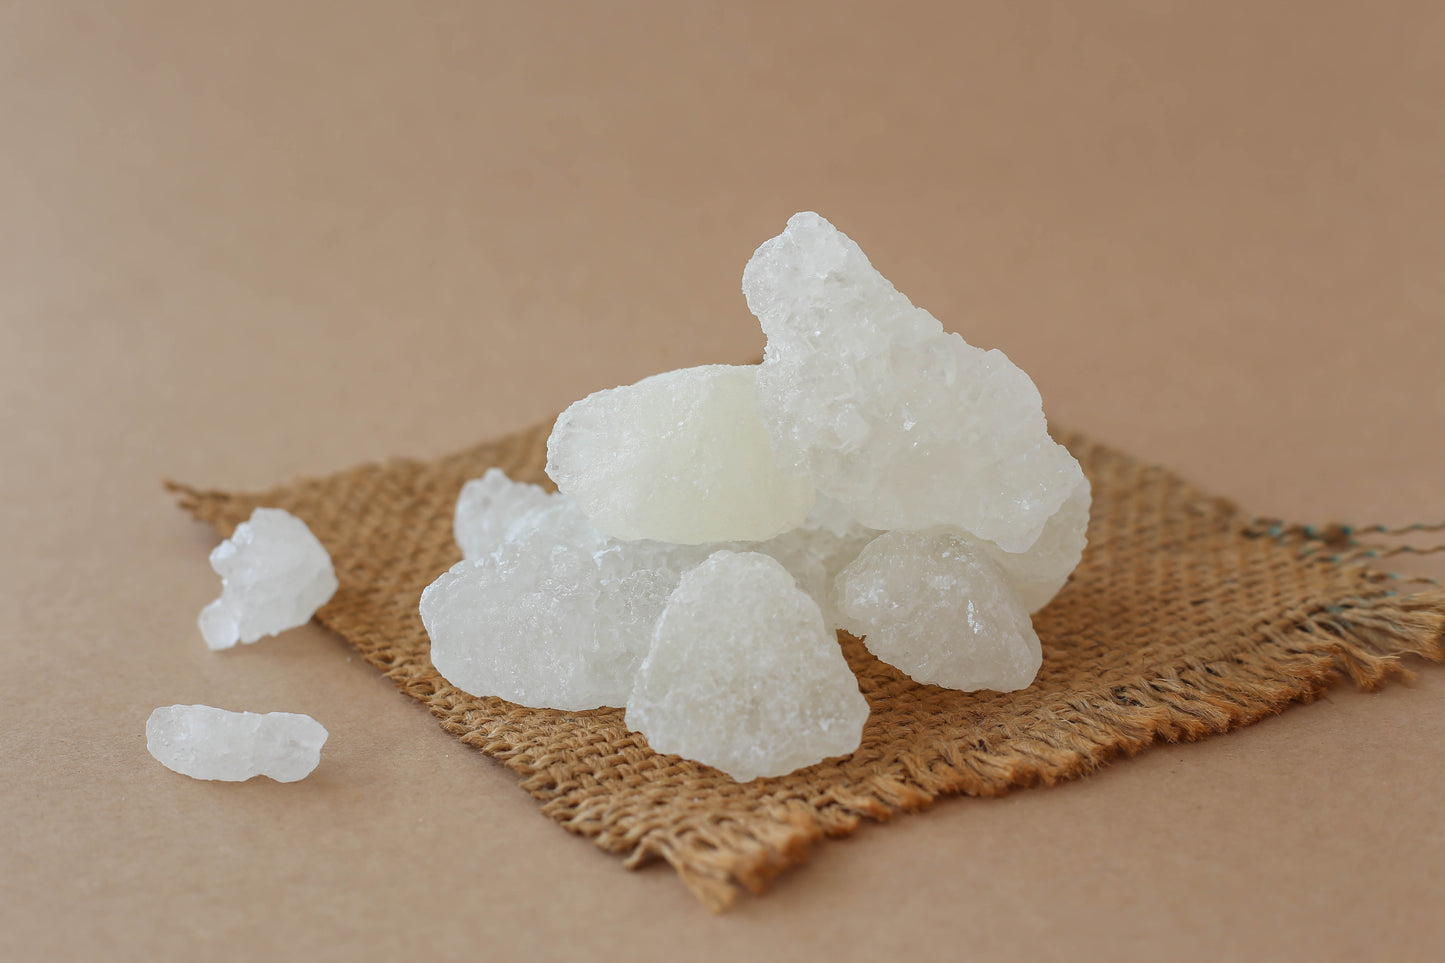 Sugar Candy Stone/ Sugar Candy/ White Sugar Rock/ Kalkandam (250 gm) - AdukkalaOnline.in